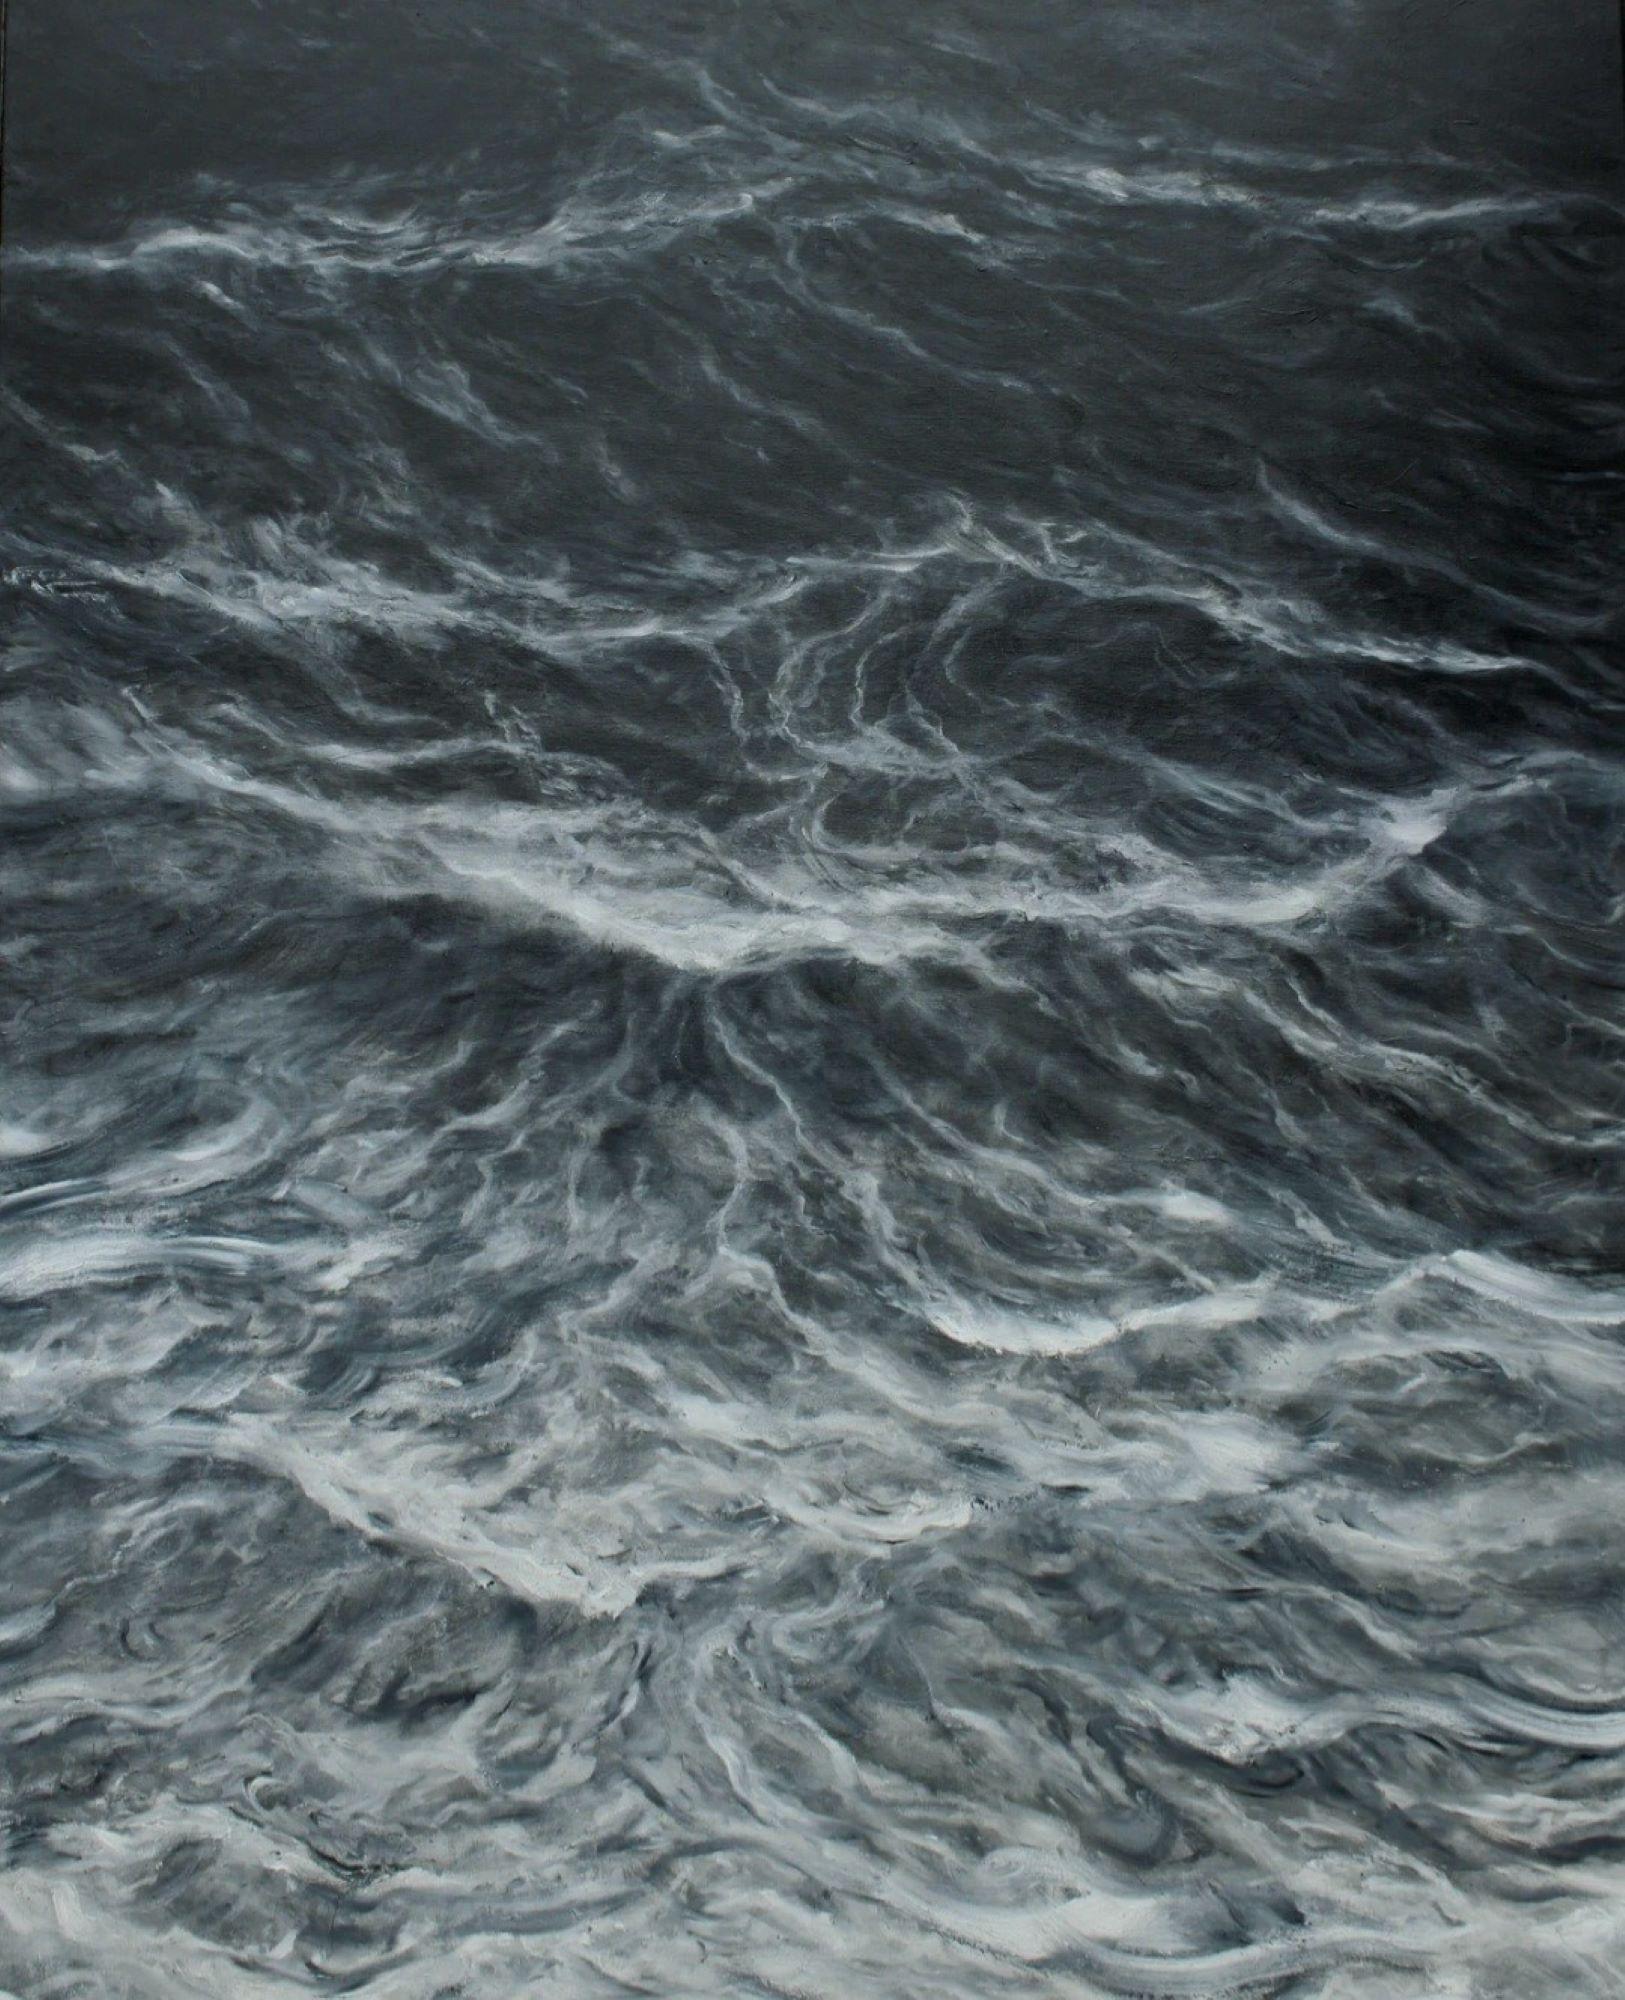 Abstraktes Meer ist ein einzigartiges Gemälde des zeitgenössischen Künstlers Franco Salas Borquez, das in Mischtechnik mit Pigmenten und Kohle auf Leinwand gemalt wurde. Die Abmessungen betragen 160 × 130 cm (63 × 51.2 in). 
Das Kunstwerk ist